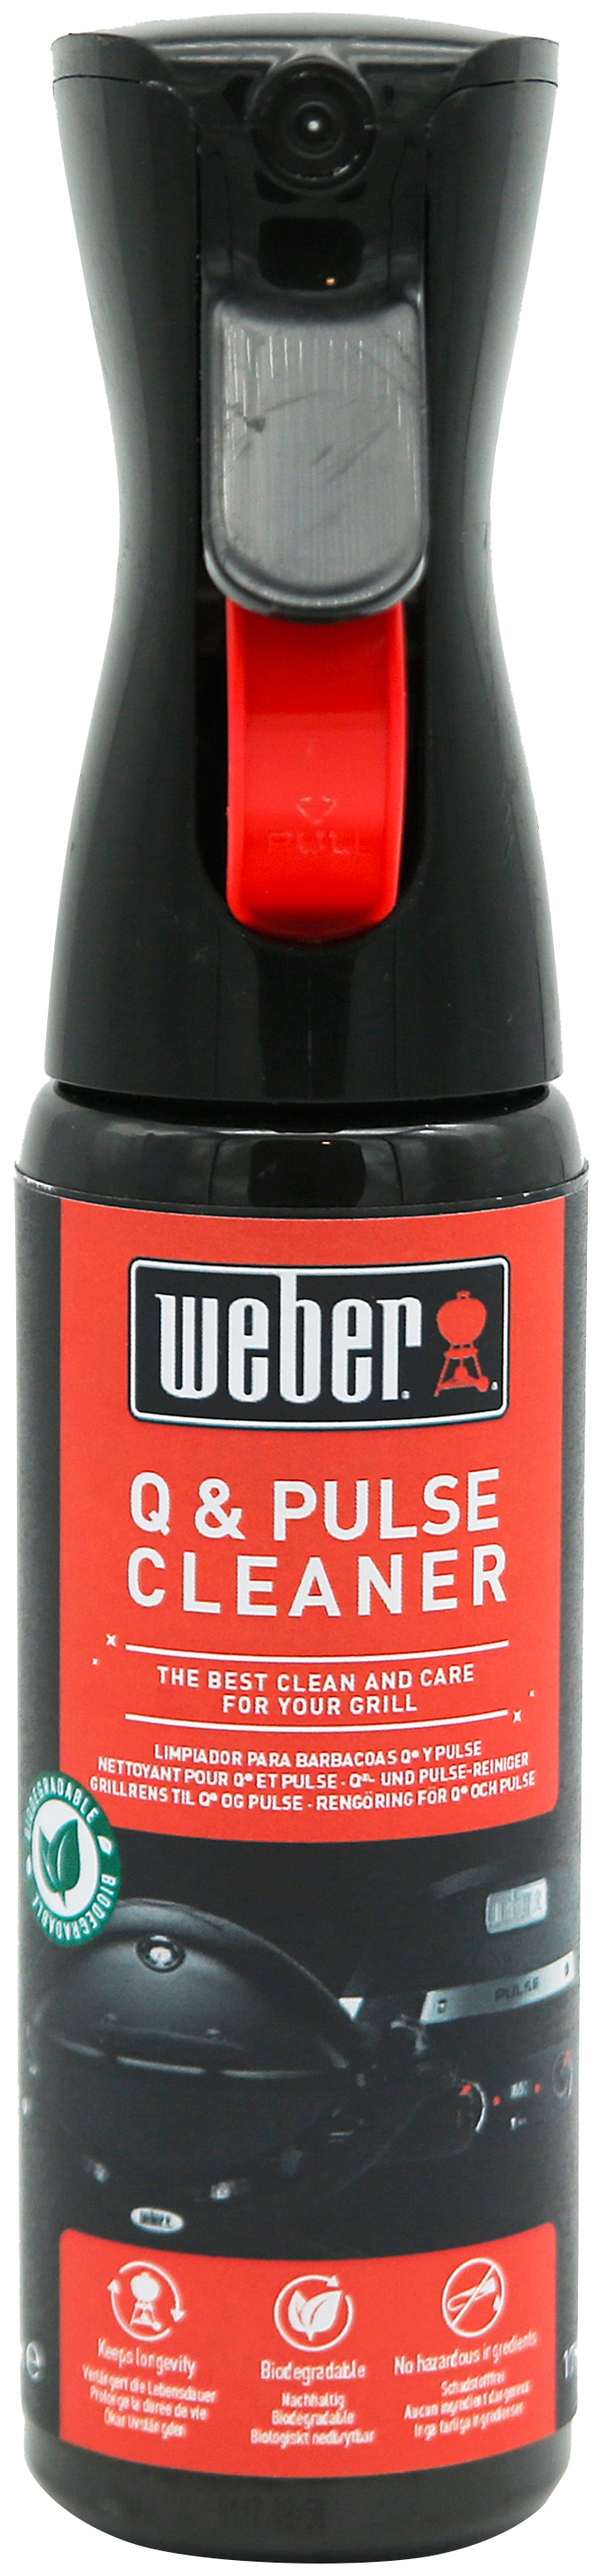 »Q kaufen 300 Pulse Online & Cleaner«, Shop im Grillreiniger OTTO ml Weber